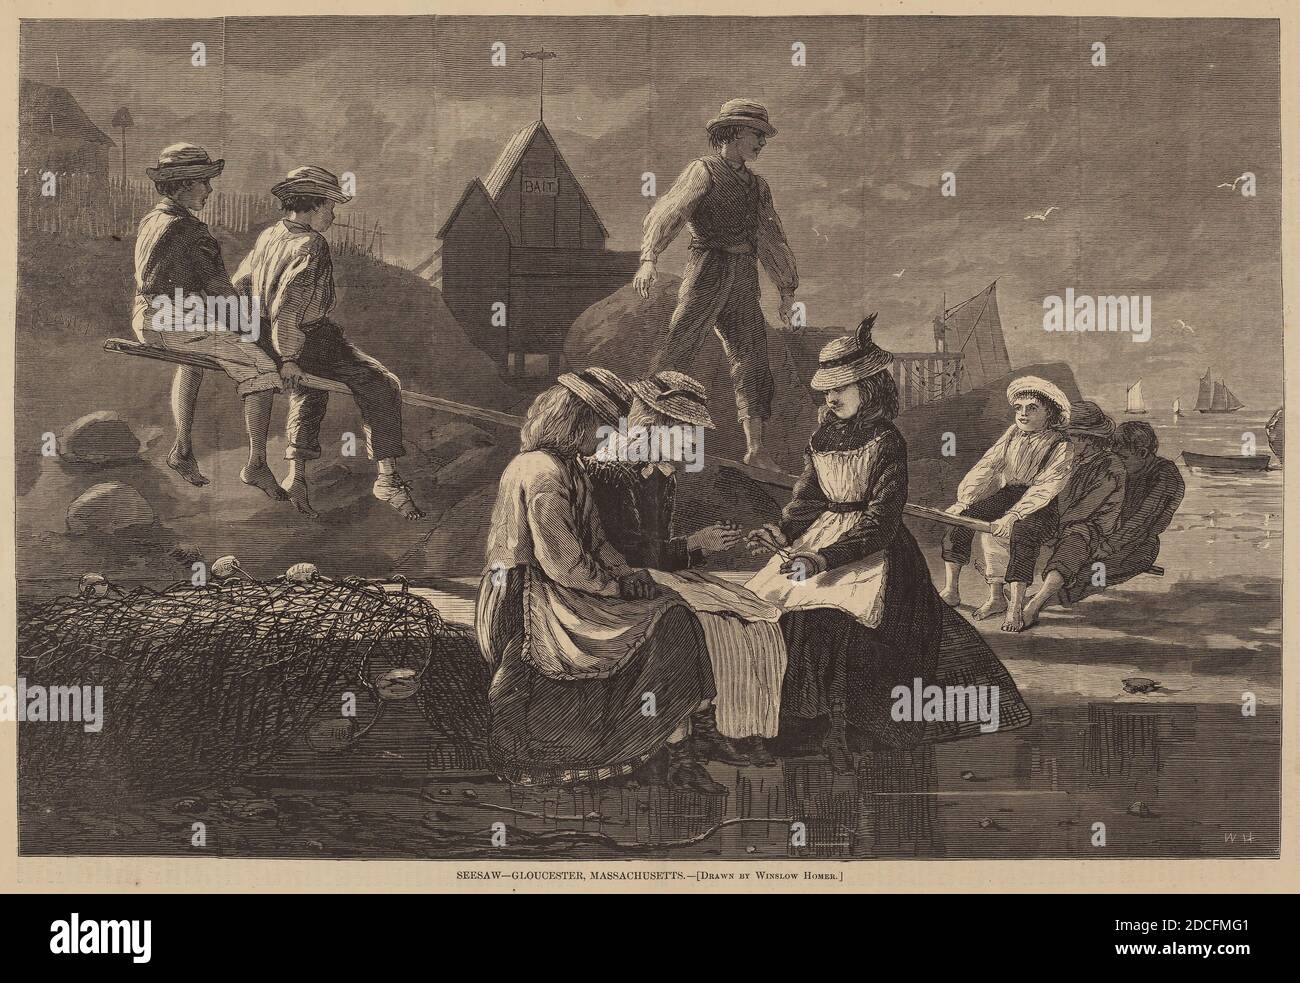 American 19e Century, (artiste), Winslow Homer, (artiste après), American, 1836 - 1910, seesaw - Gloucester, Massachusetts, de 'Harper's Weekly', 12 septembre 1874, p. 757, (série), publié en 1874, gravure sur bois Banque D'Images